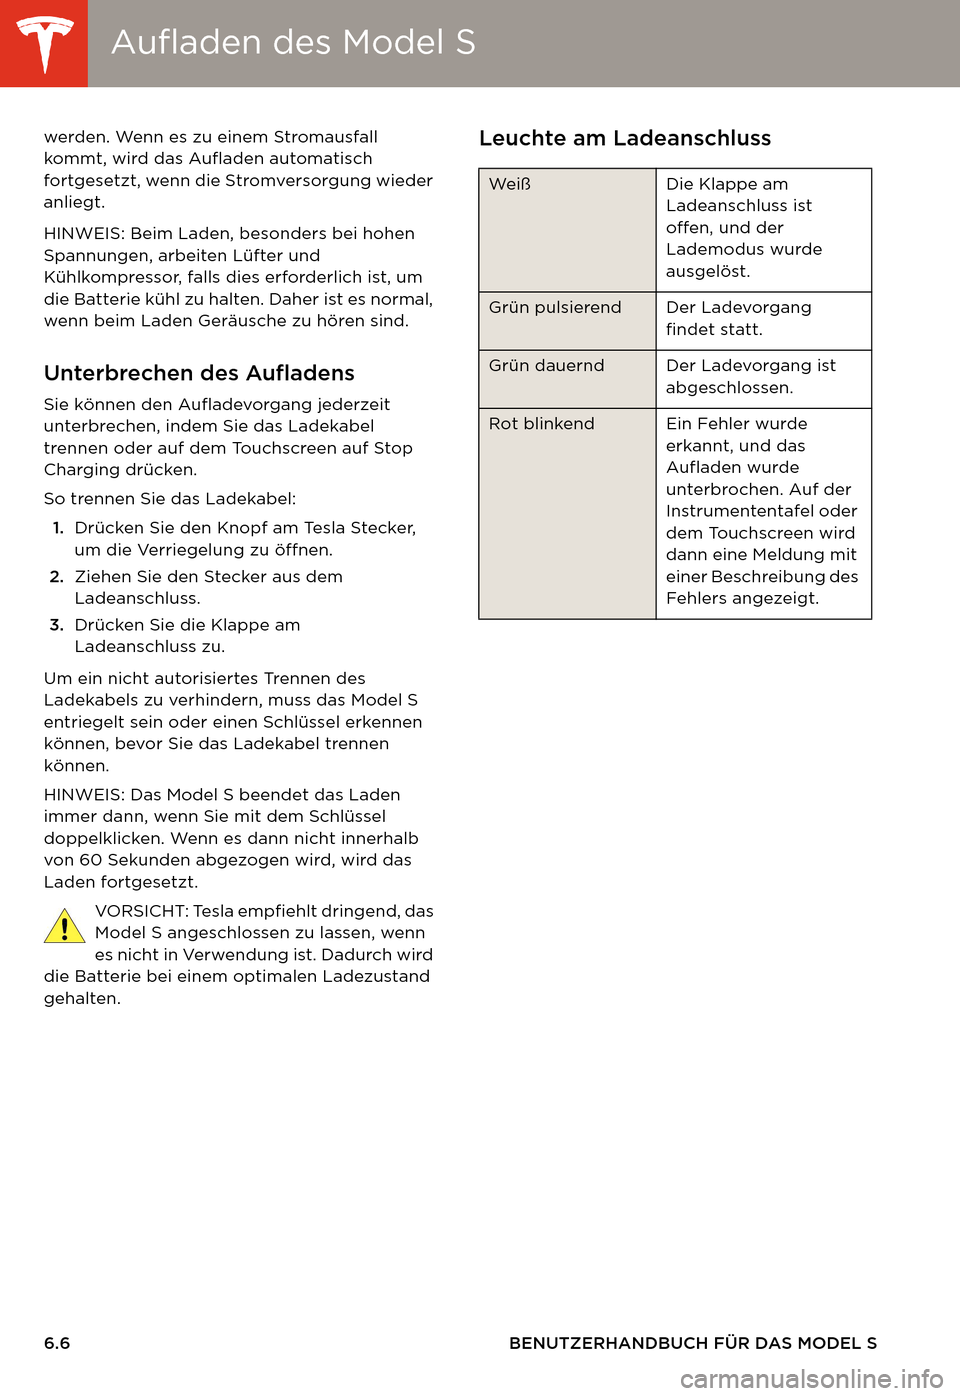 TESLA MODEL S 2014  Betriebsanleitung (in German) Aufladen des Model SAufladen des Model S
6.6 BENUTZERHANDBUCH FÜR DAS MODEL S werden. Wenn es zu einem Stromausfall 
kommt, wird das Aufladen automatisch 
fortgesetzt, wenn die Stromversorgung wieder